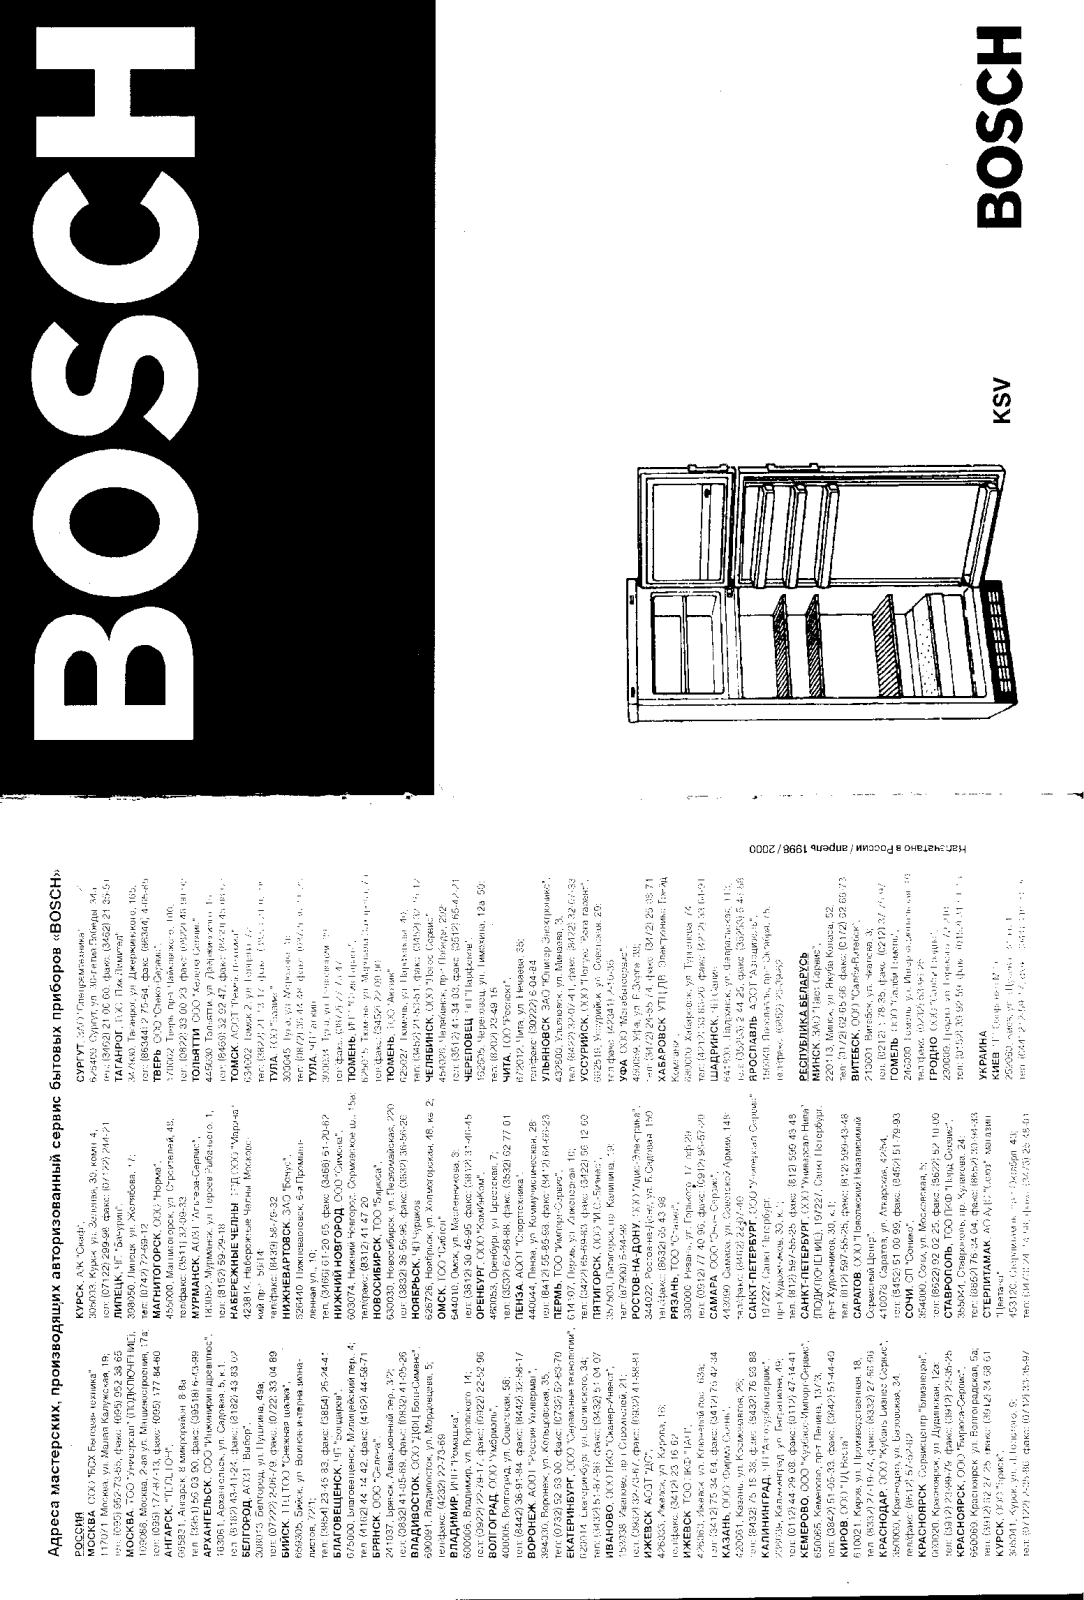 Bosch KSV User Manual